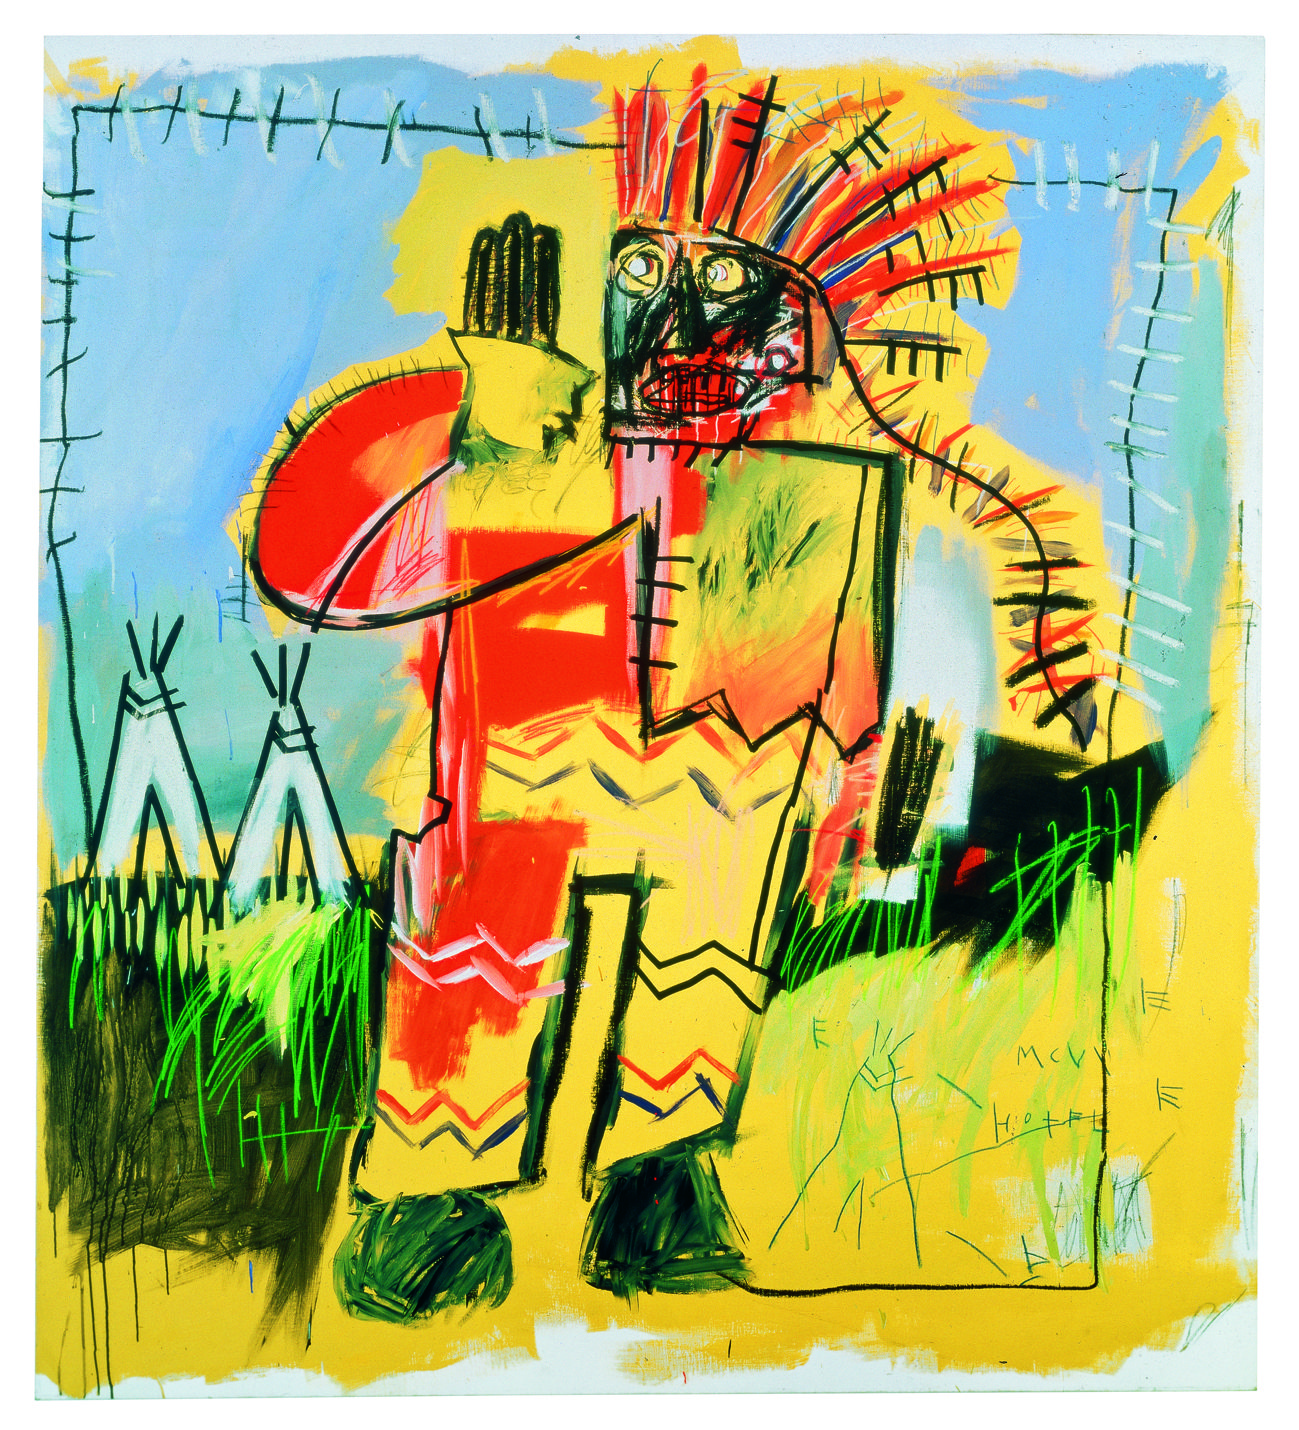 Tobacco Versus Red Chief (Табак Против Красного Вождя), 1981. Жан-Мишель Баския (Jean-Michel Basquiat) - американский художник. Неоэкспрессионизм